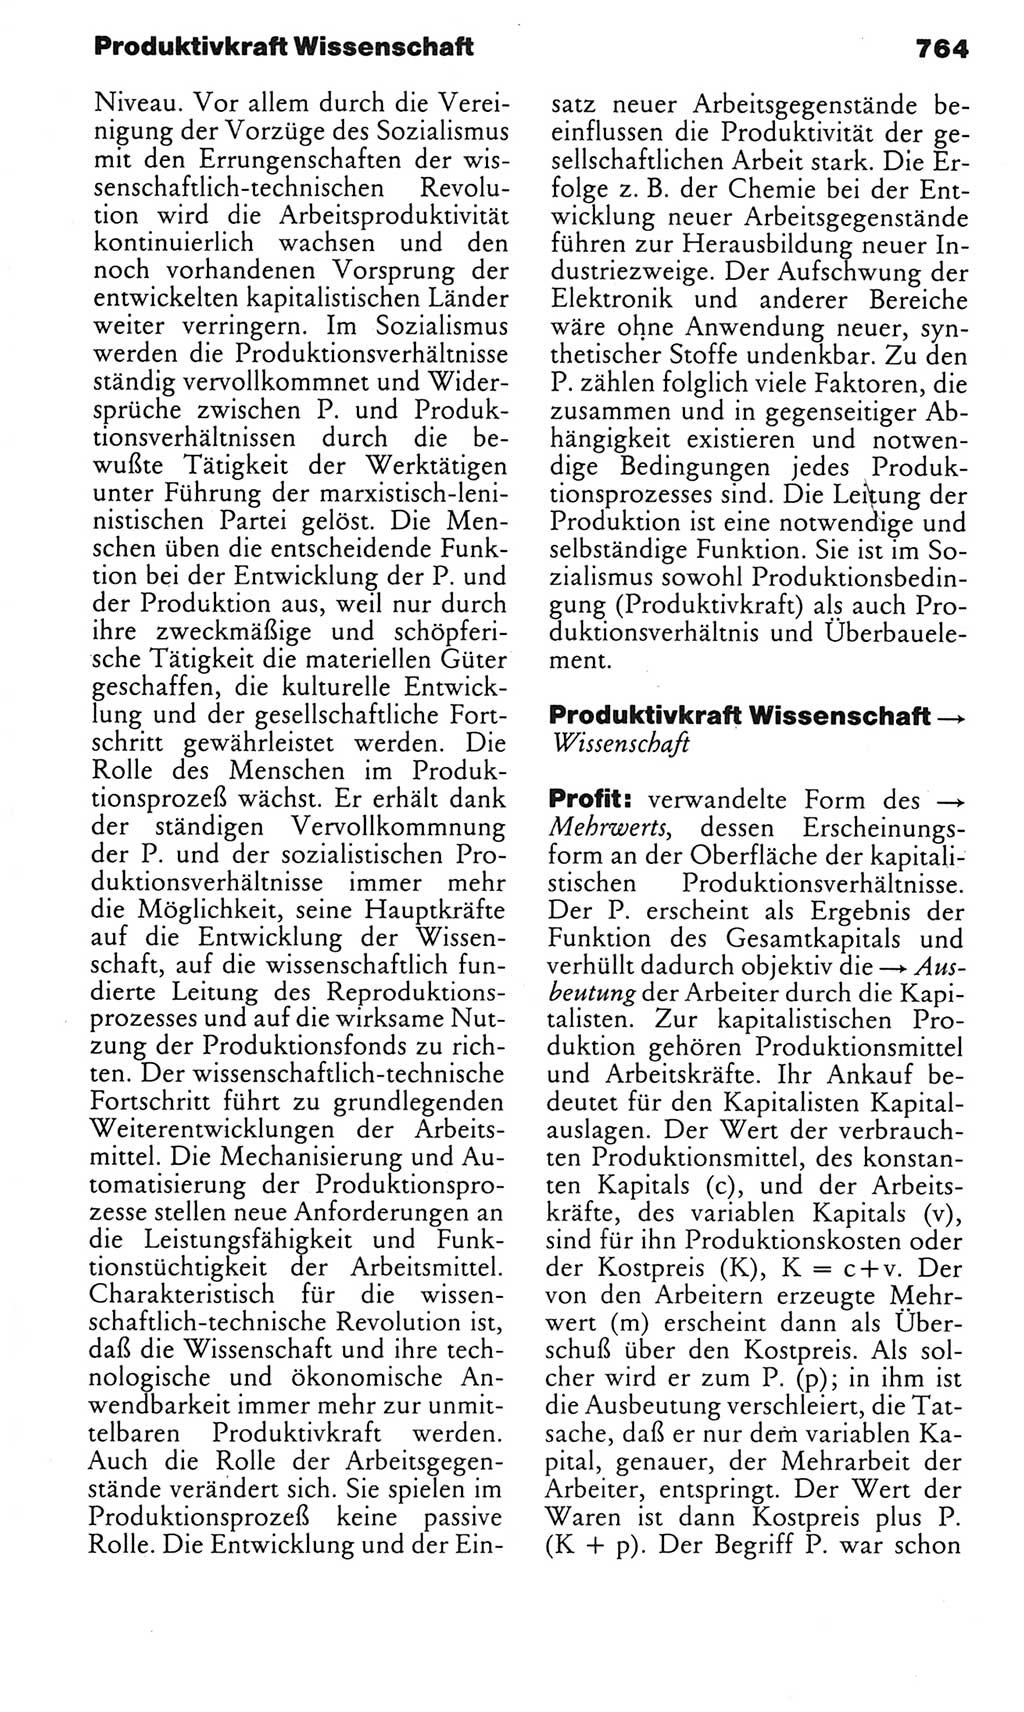 Kleines politisches Wörterbuch [Deutsche Demokratische Republik (DDR)] 1983, Seite 764 (Kl. pol. Wb. DDR 1983, S. 764)